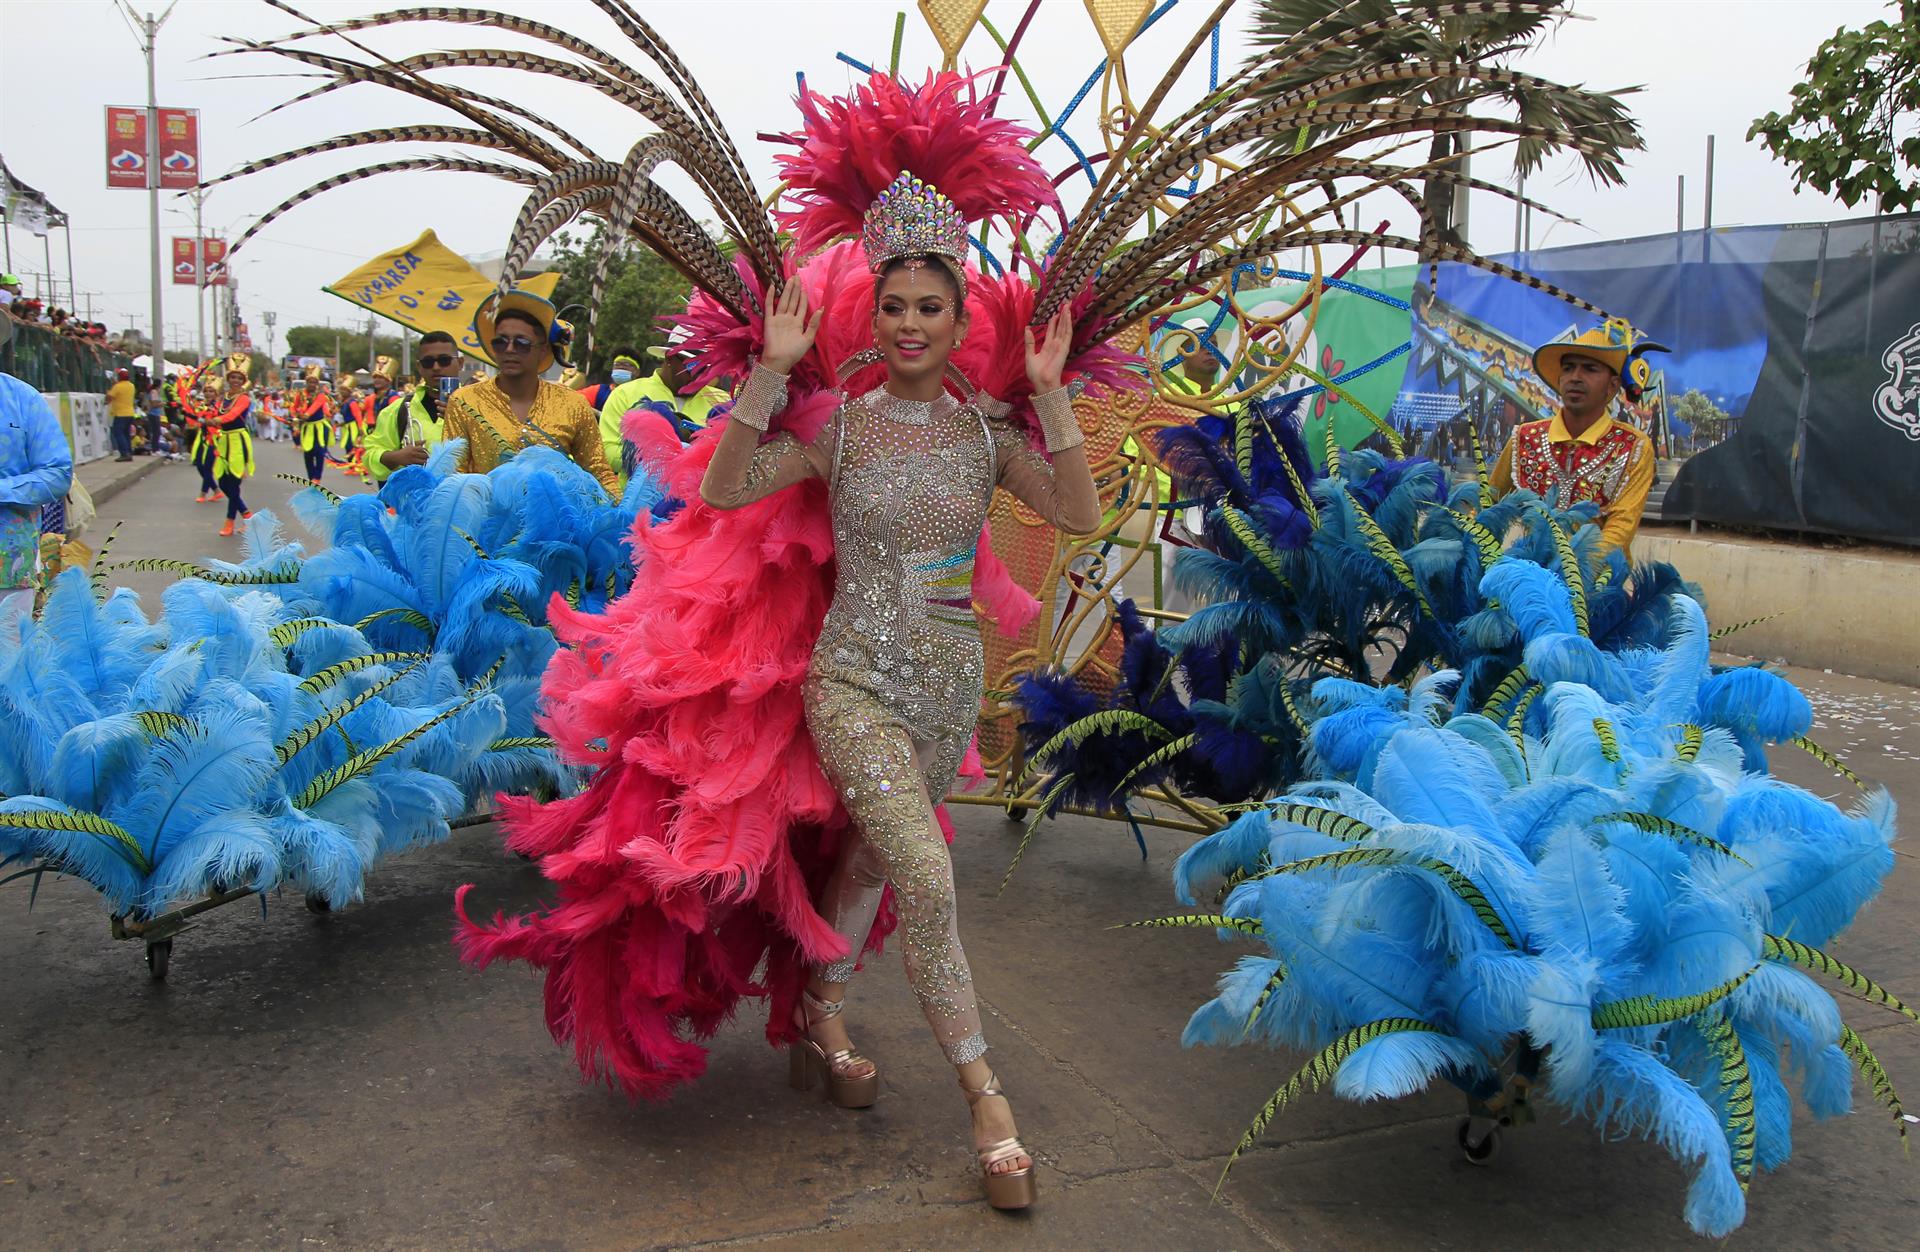 El Cumbiódromo del Carnaval de Barranquilla cierra con un colorido desfile – @Carnaval_SA